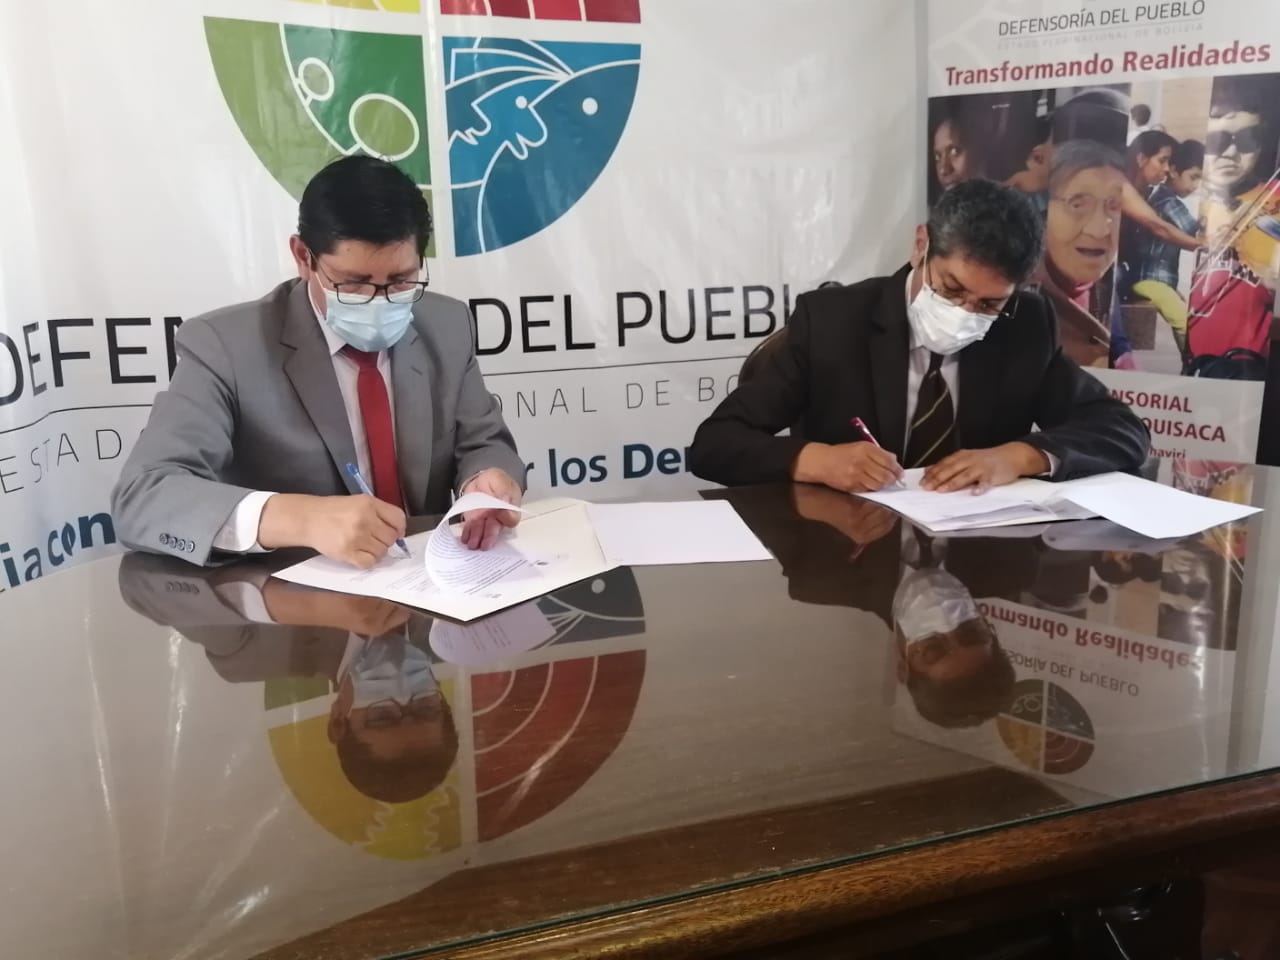 Defensoría del Pueblo y Tribunal Electoral Departamental de Chuquisaca suscriben Acuerdo de Cooperación y Coordinación Interinstitucional para las elecciones subnacionales